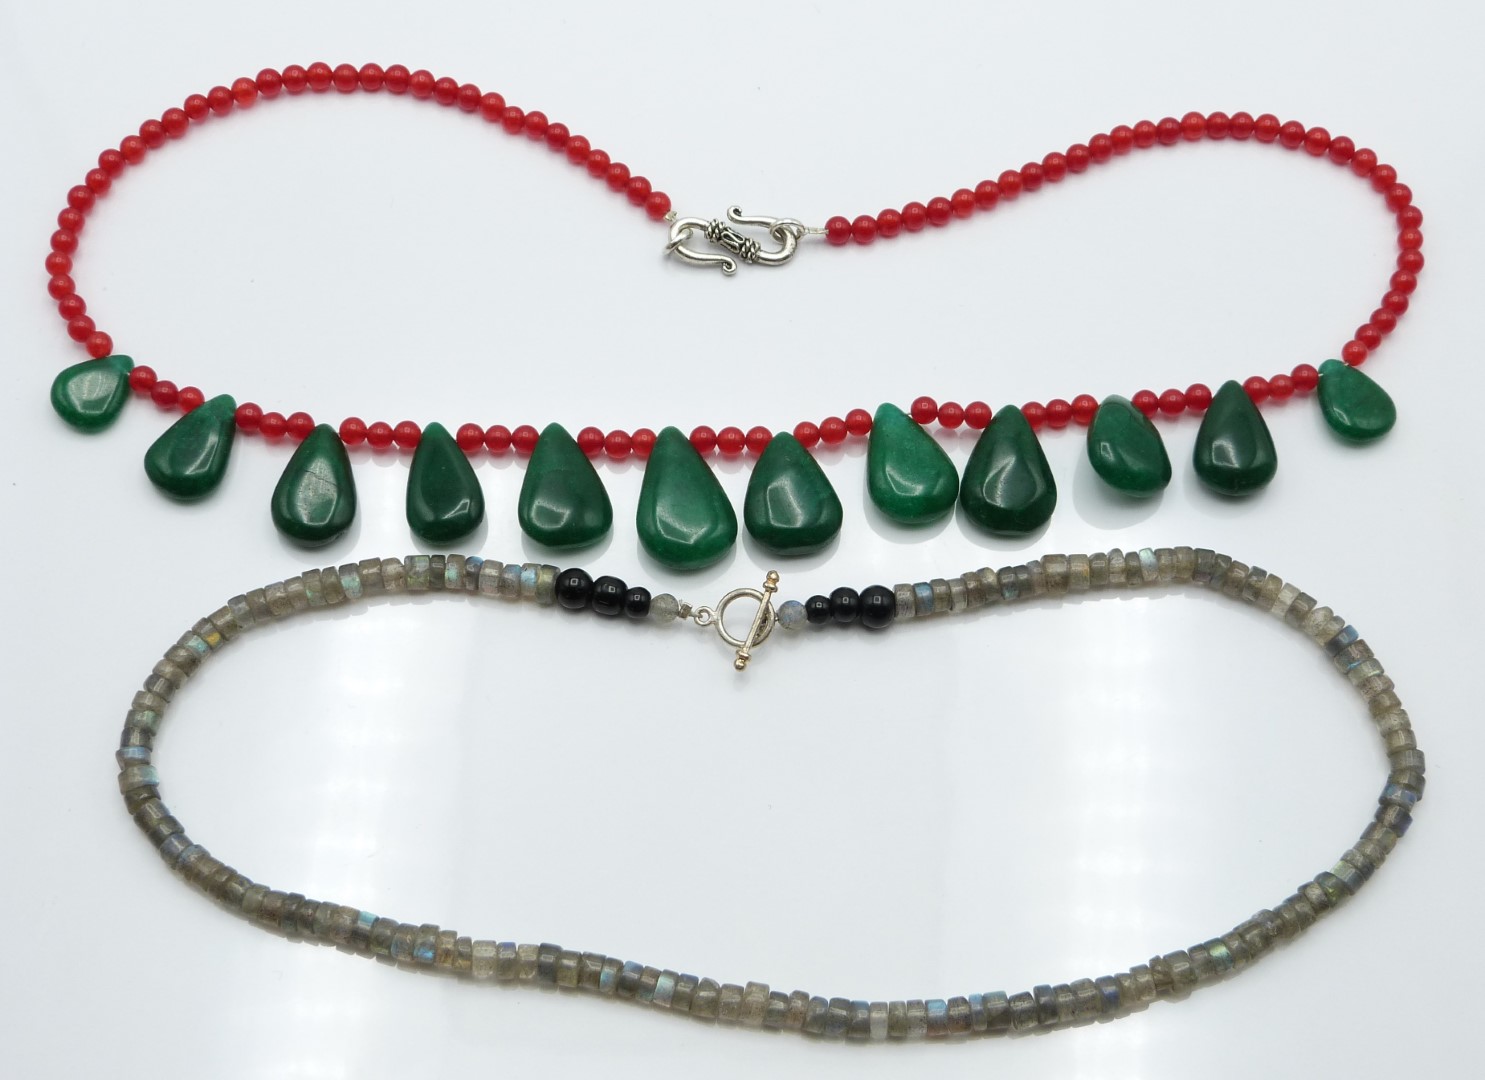 A labradorite necklace, jade and quartz necklace, garnet and quartz and another quartz necklace - Image 3 of 3